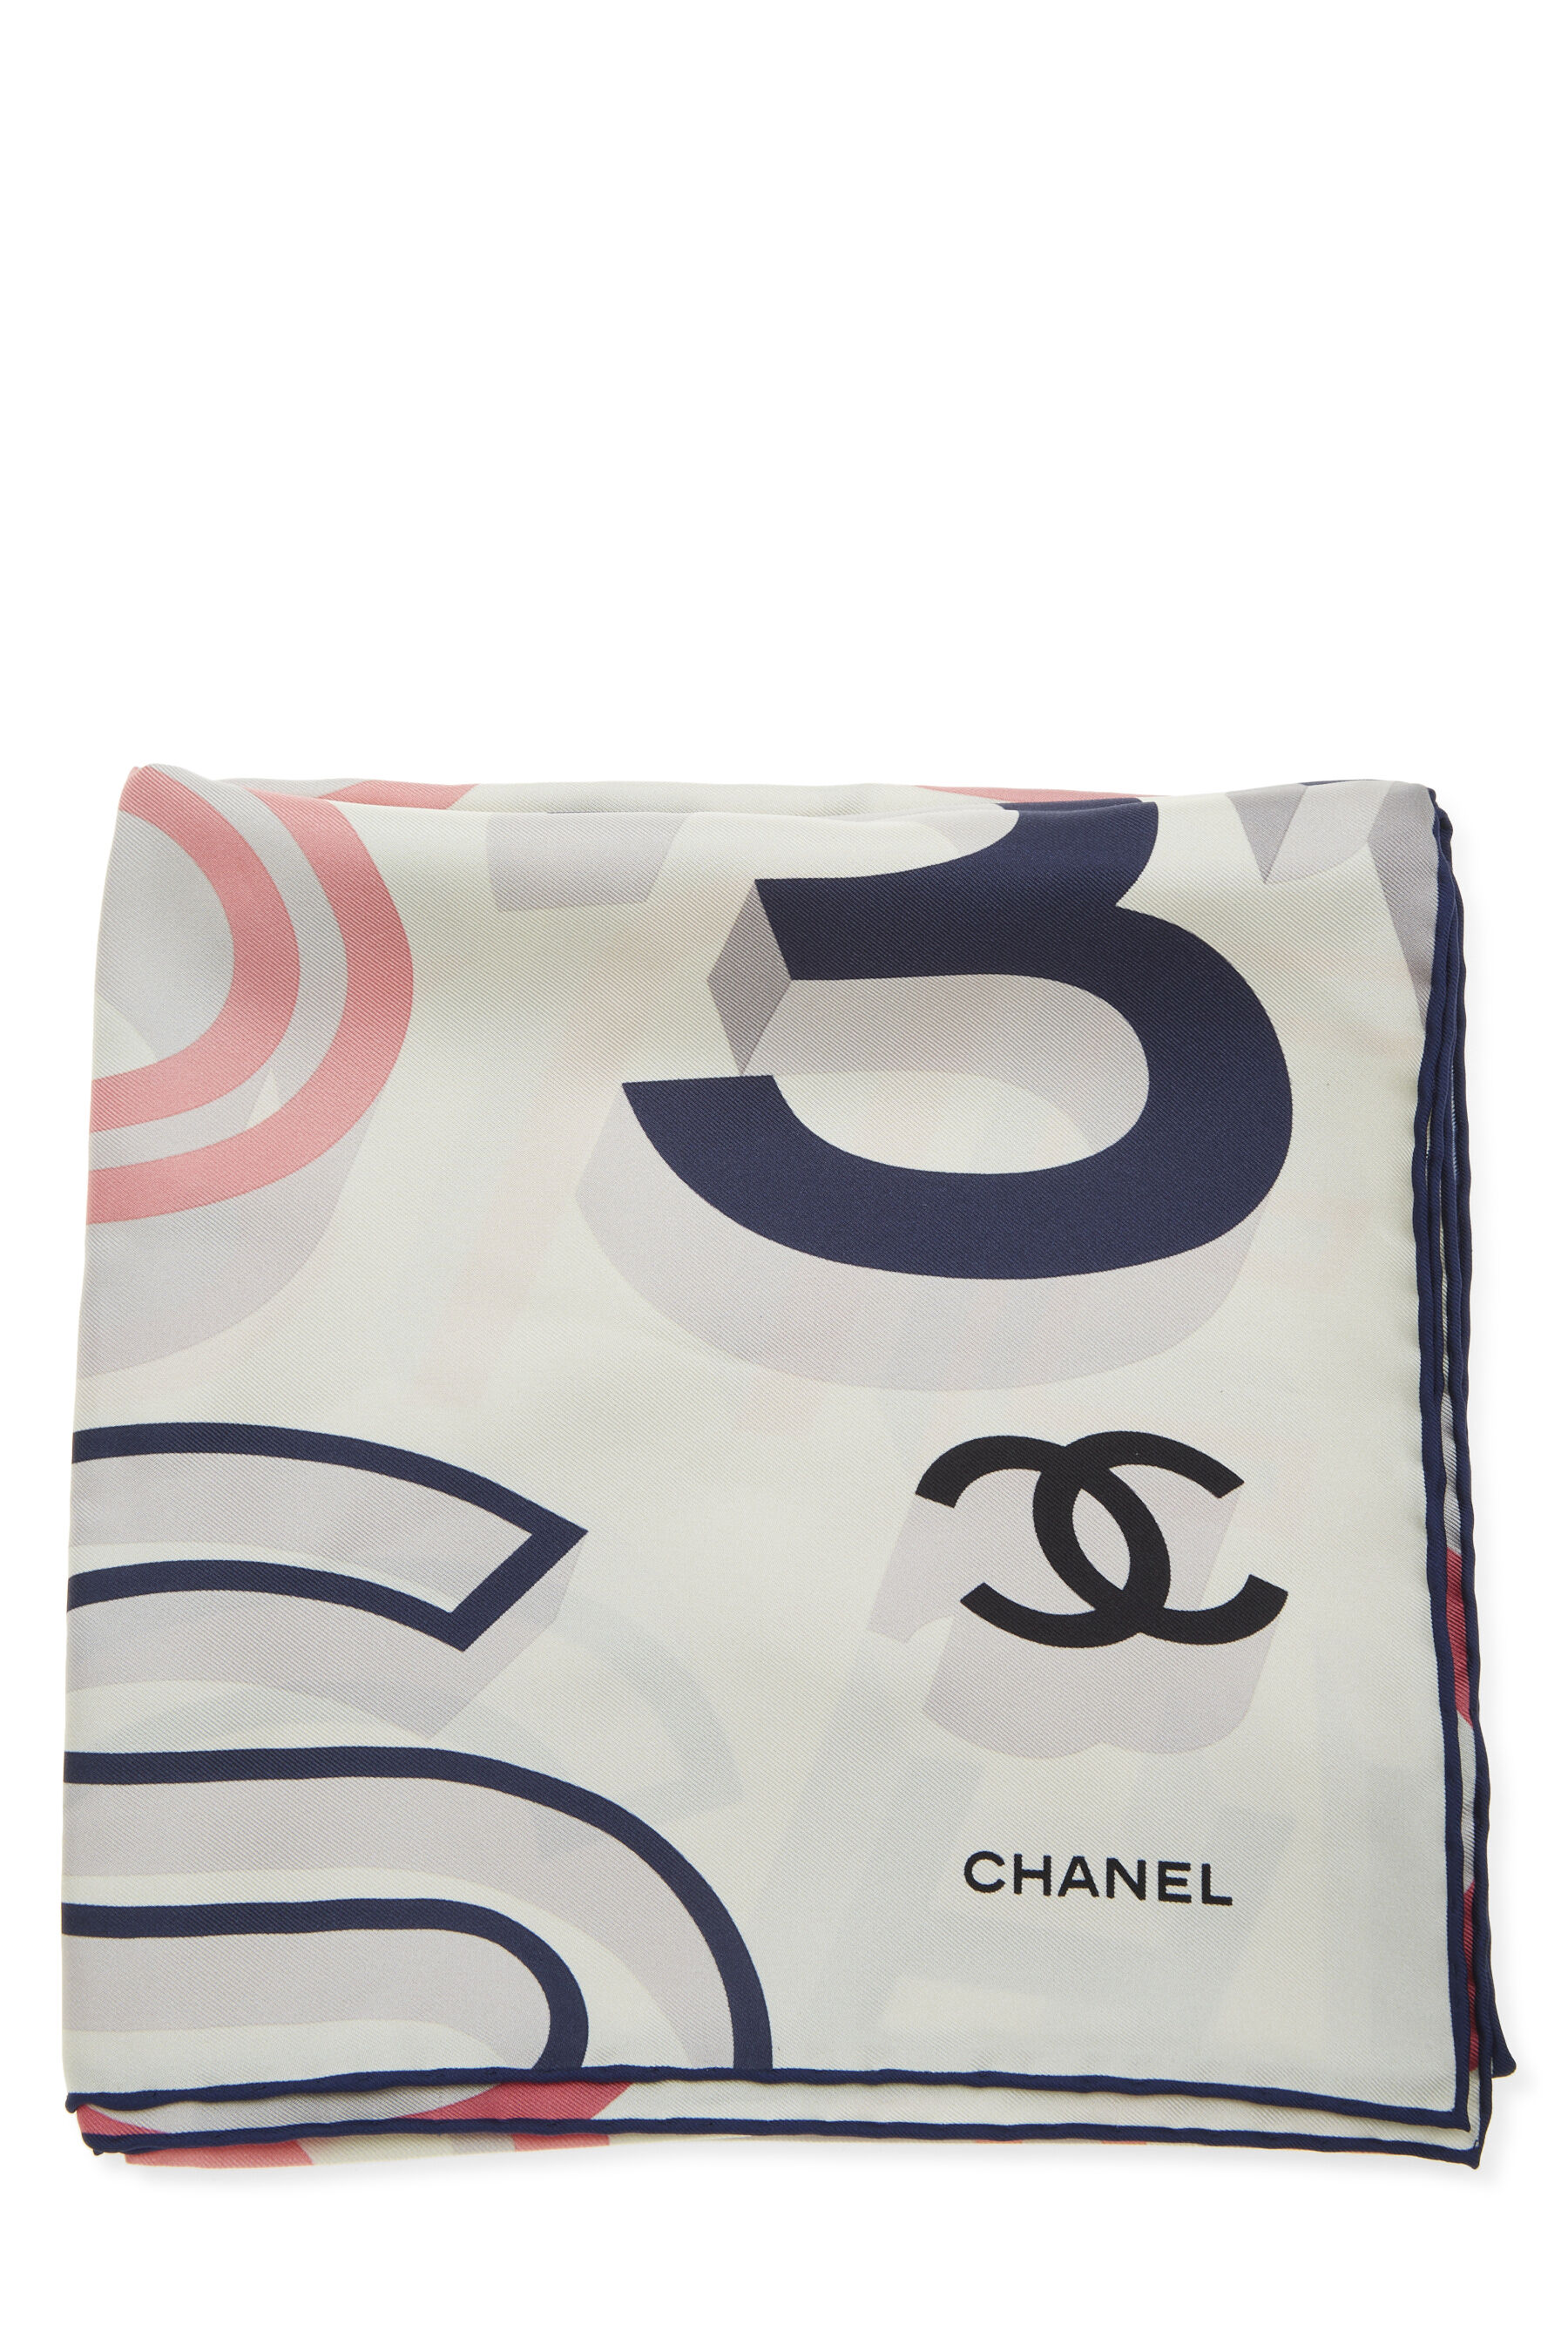 Chanel Brand New Grey CC Silk Small Scarf